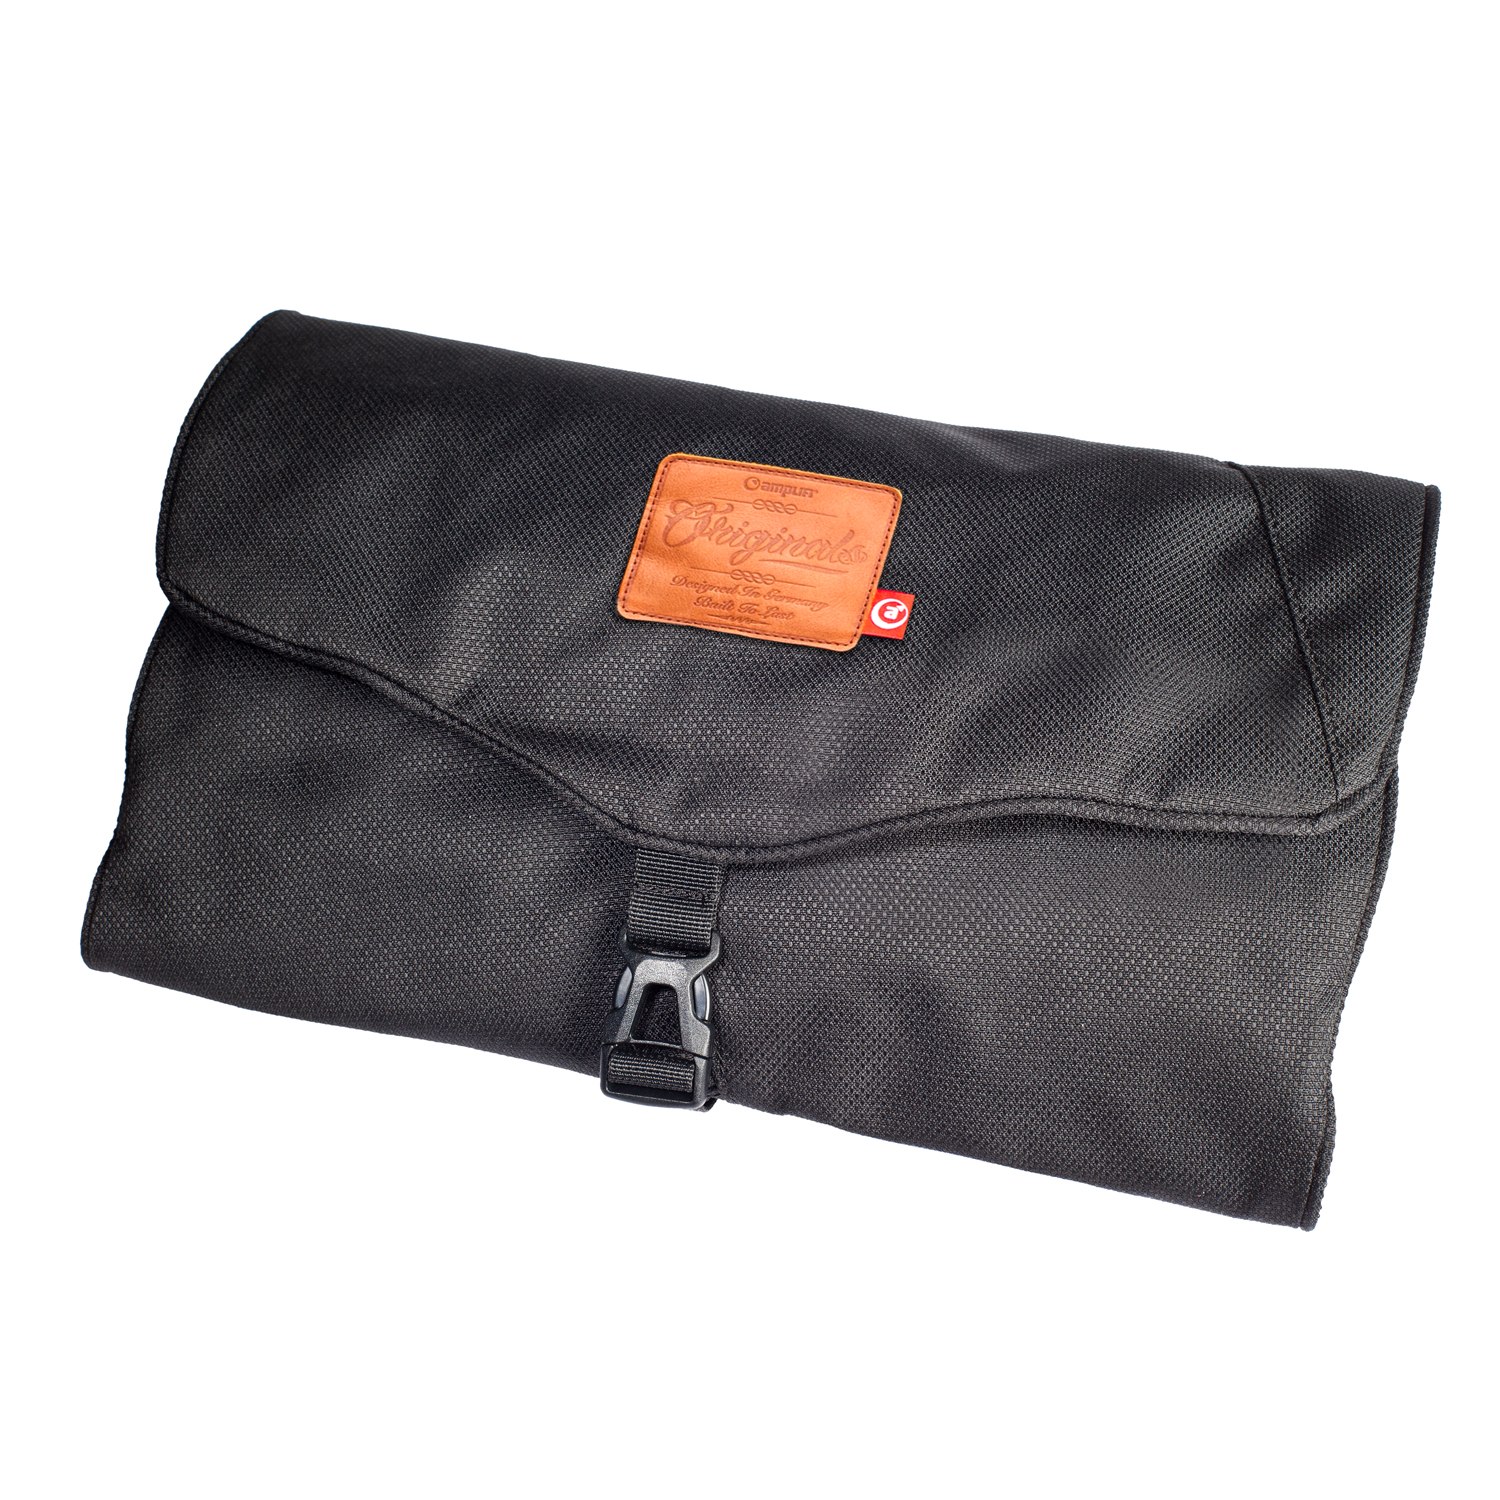 Picture of Amplifi Wash Pack Wash Bag - black